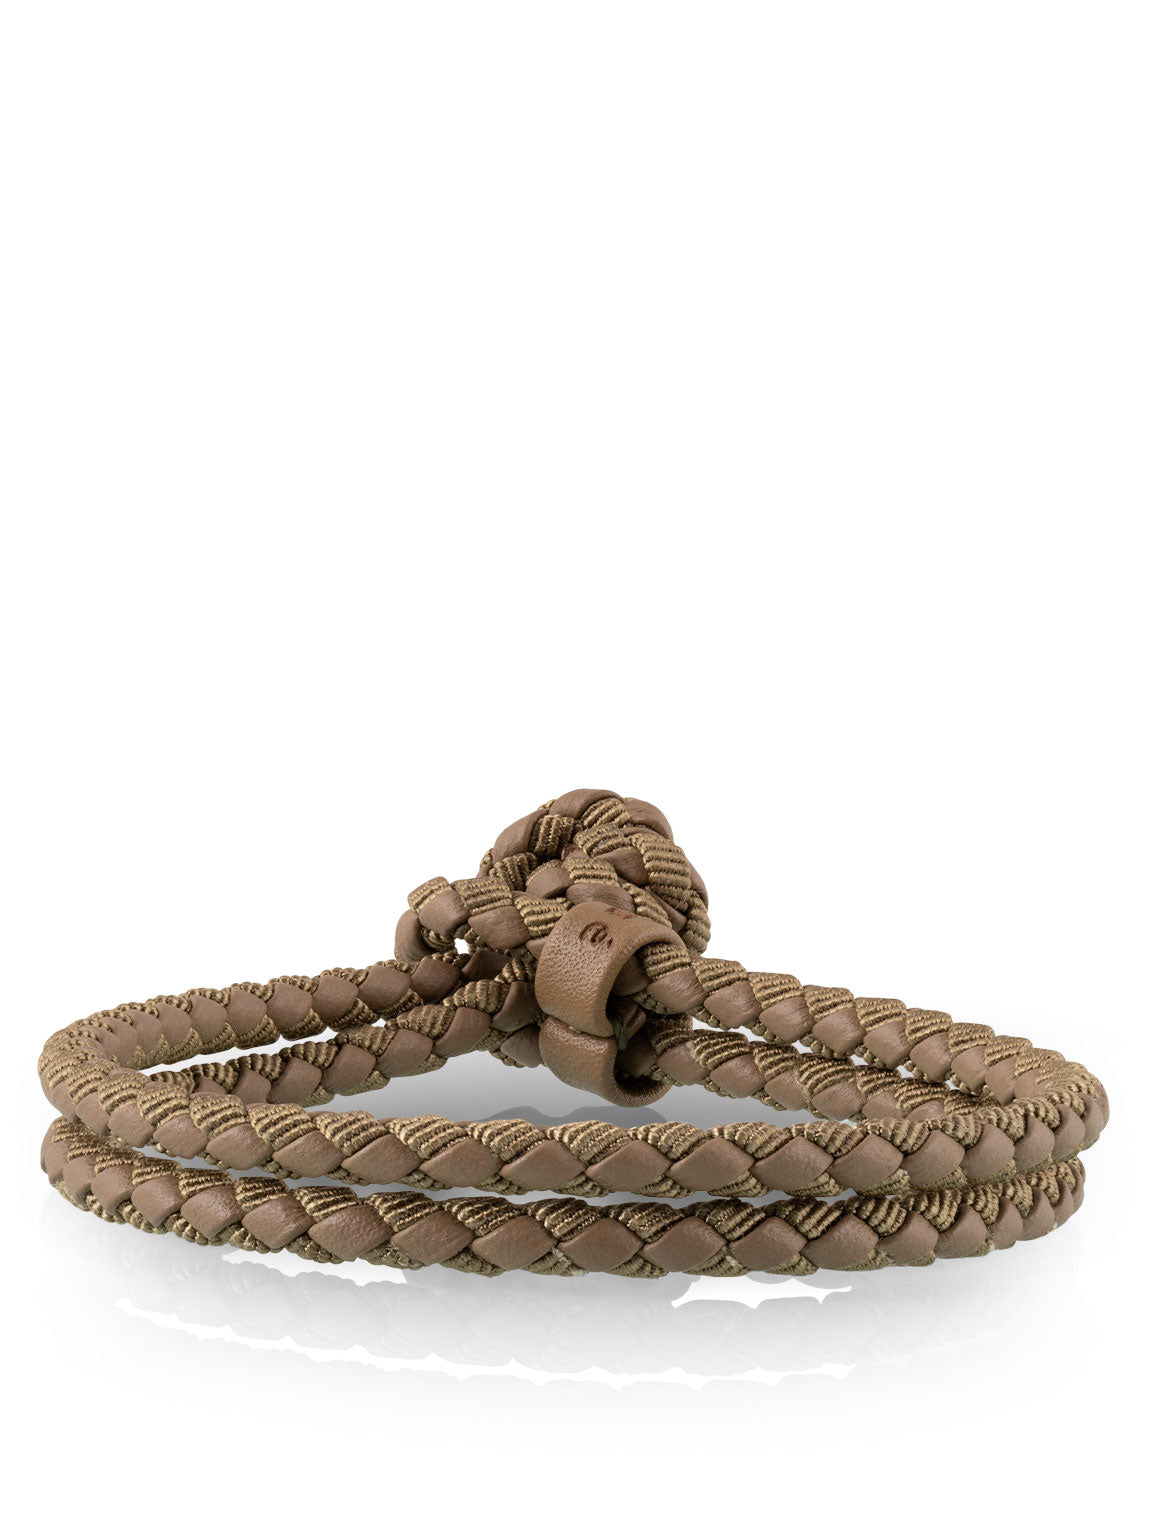 mixed woven bracelet in khaki for men